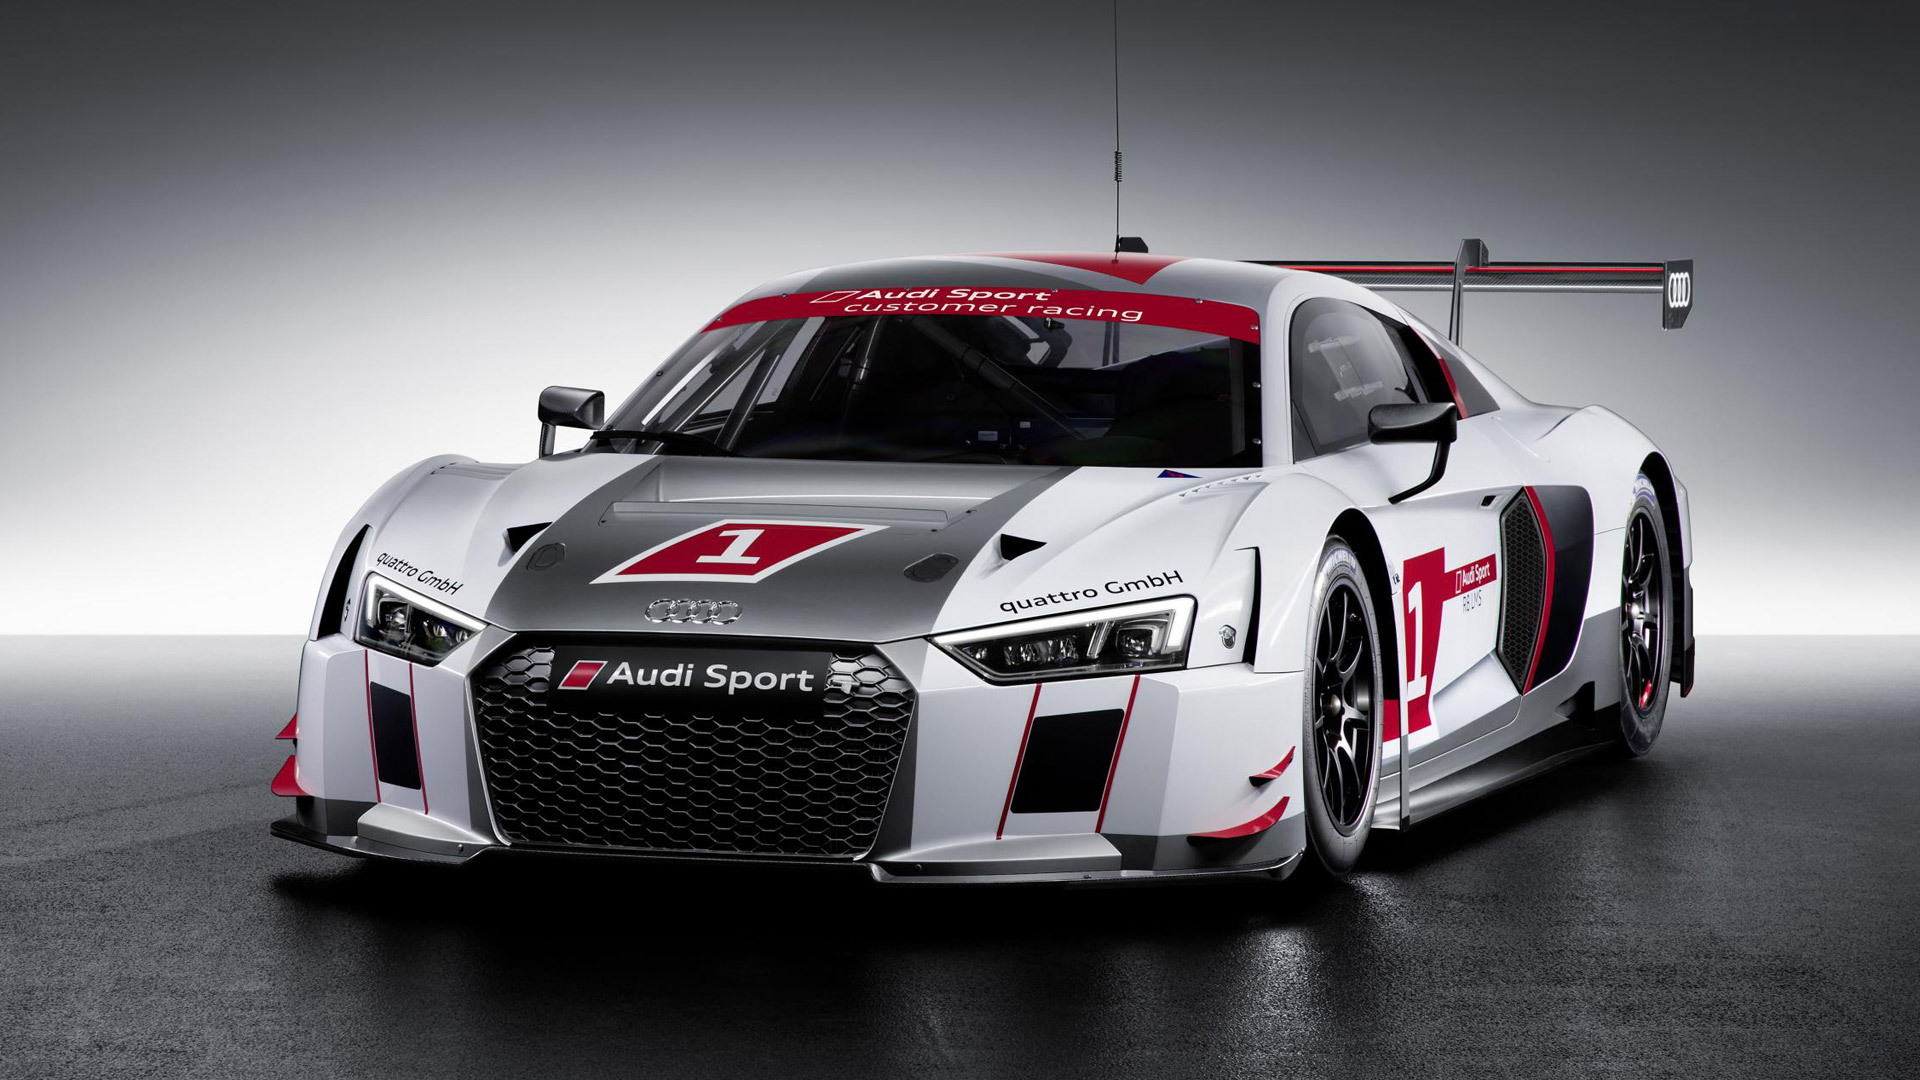 2016 Audi R8 LMS race car